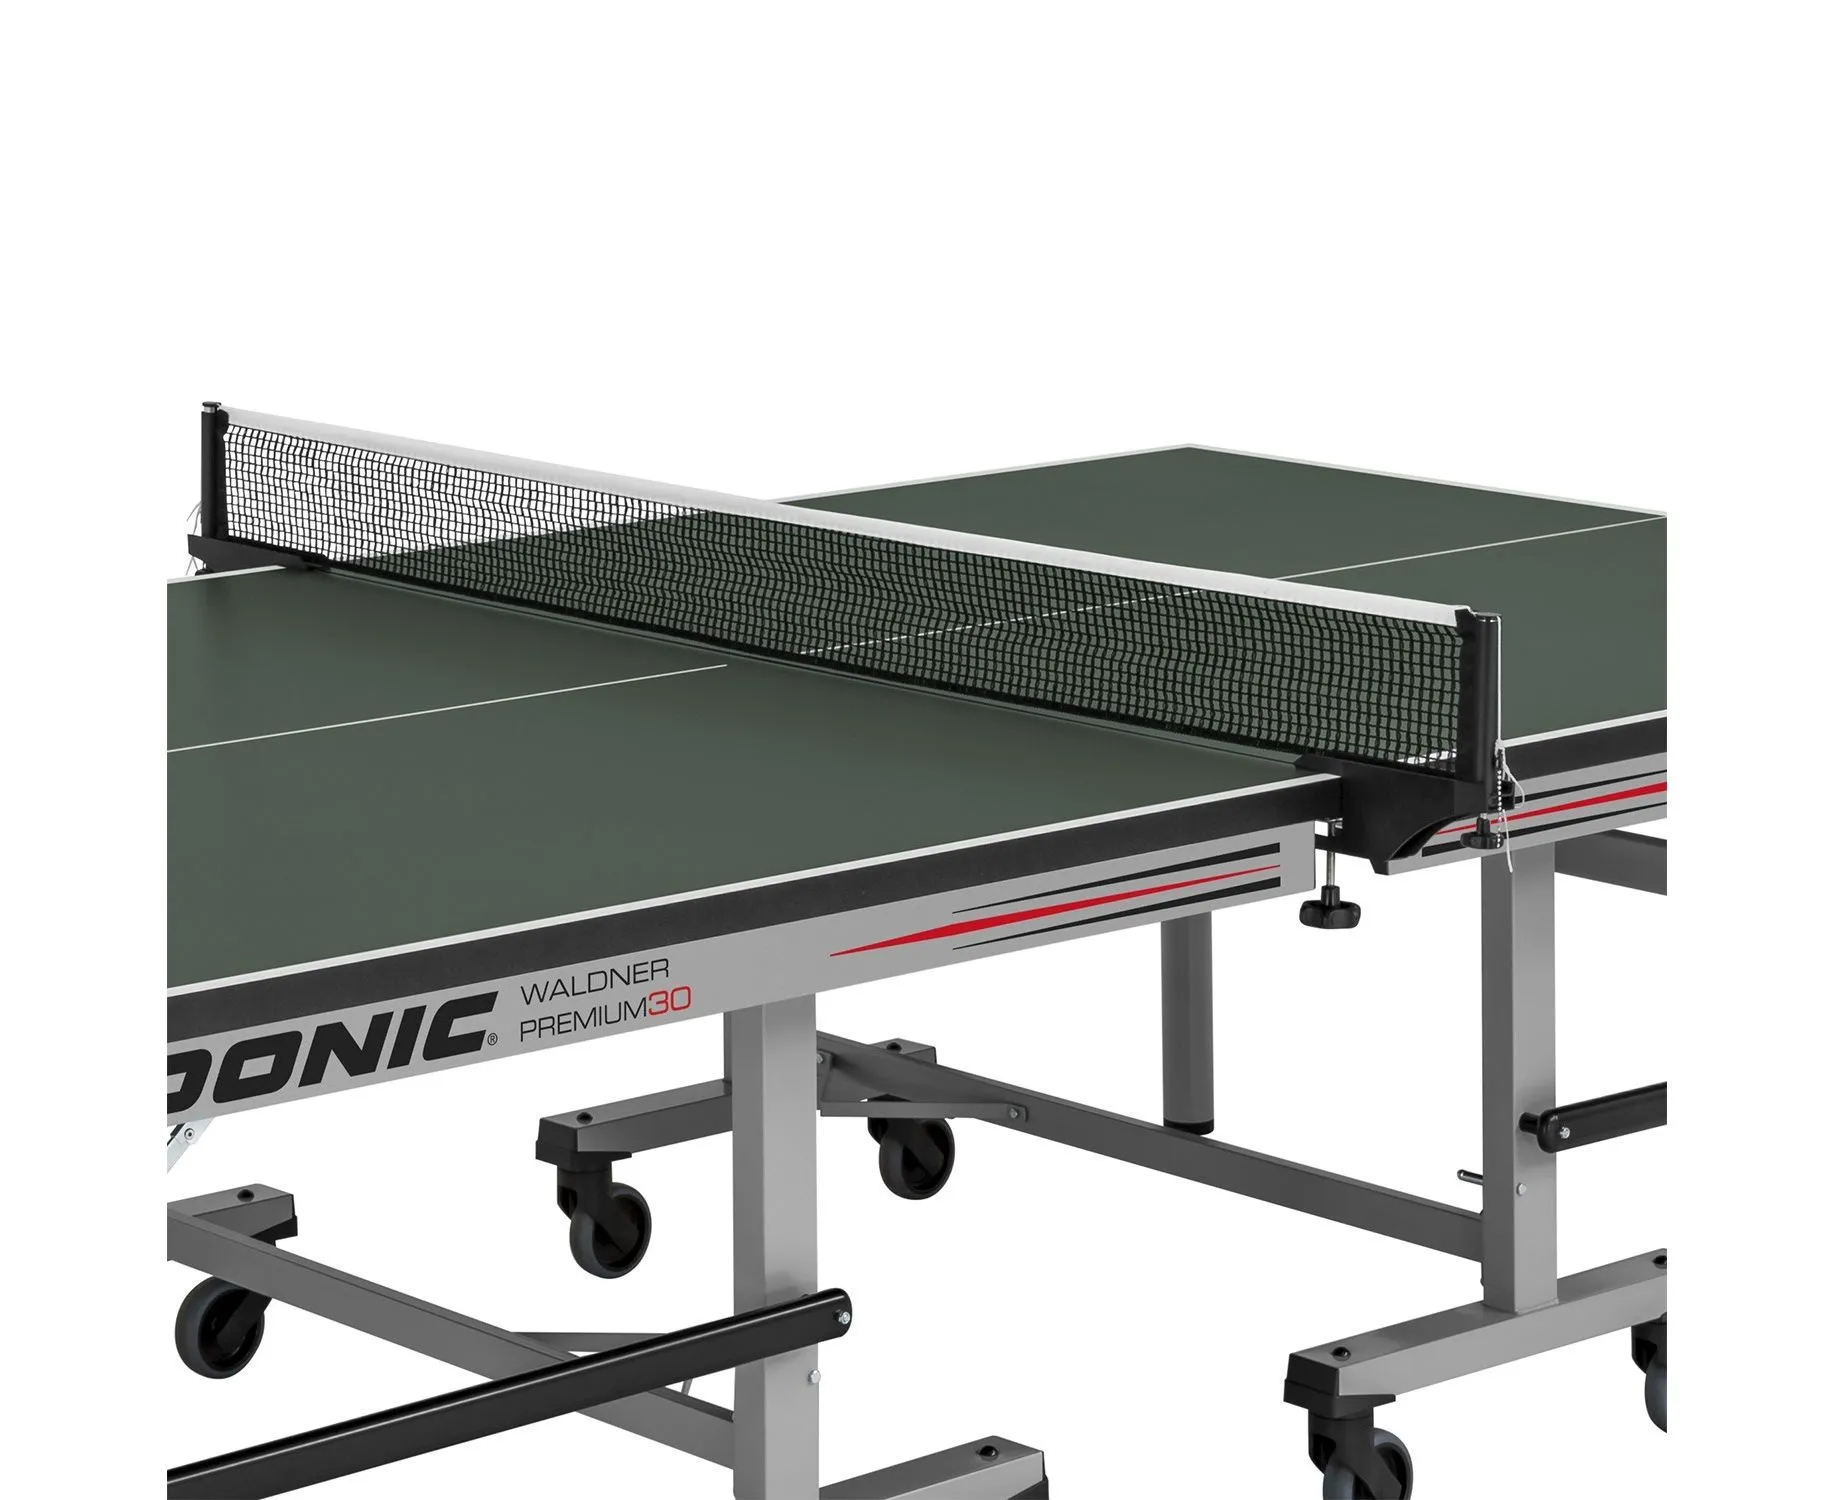 Теннисный стол DONIC Waldener Premium 30 green (без сетки) - 3 